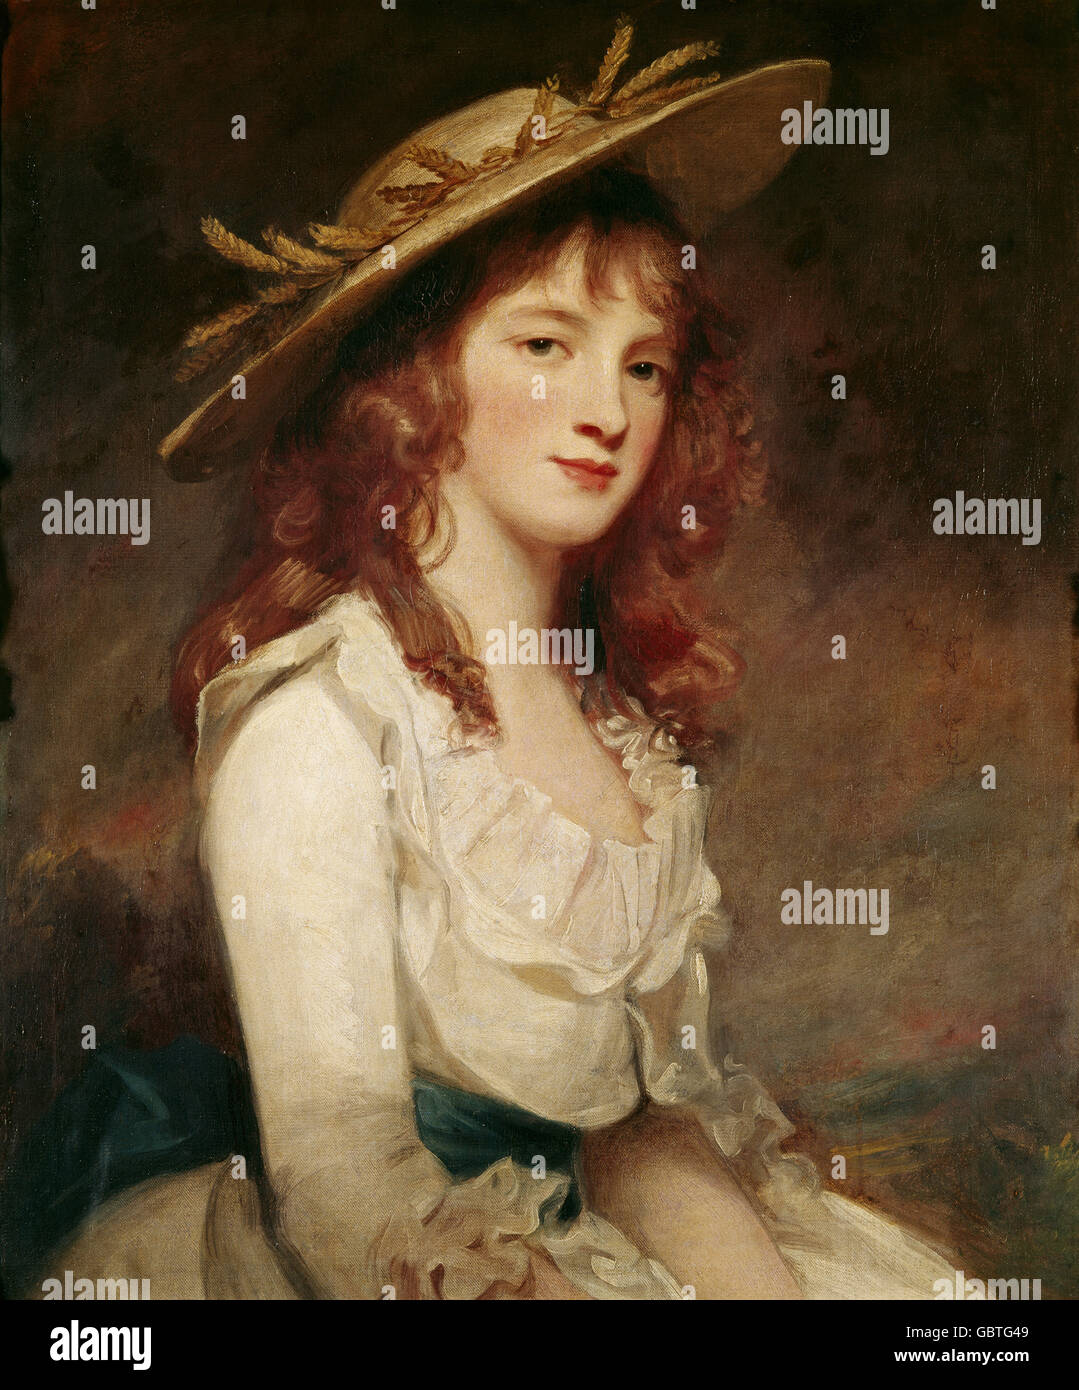 Bildende Kunst, Romney, George (1734-1802), Malerei, "Bild von Fräulein Constable", Öl auf Leinwand, 1787, Sammlung Gulbenkian, Lissabon, Stockfoto